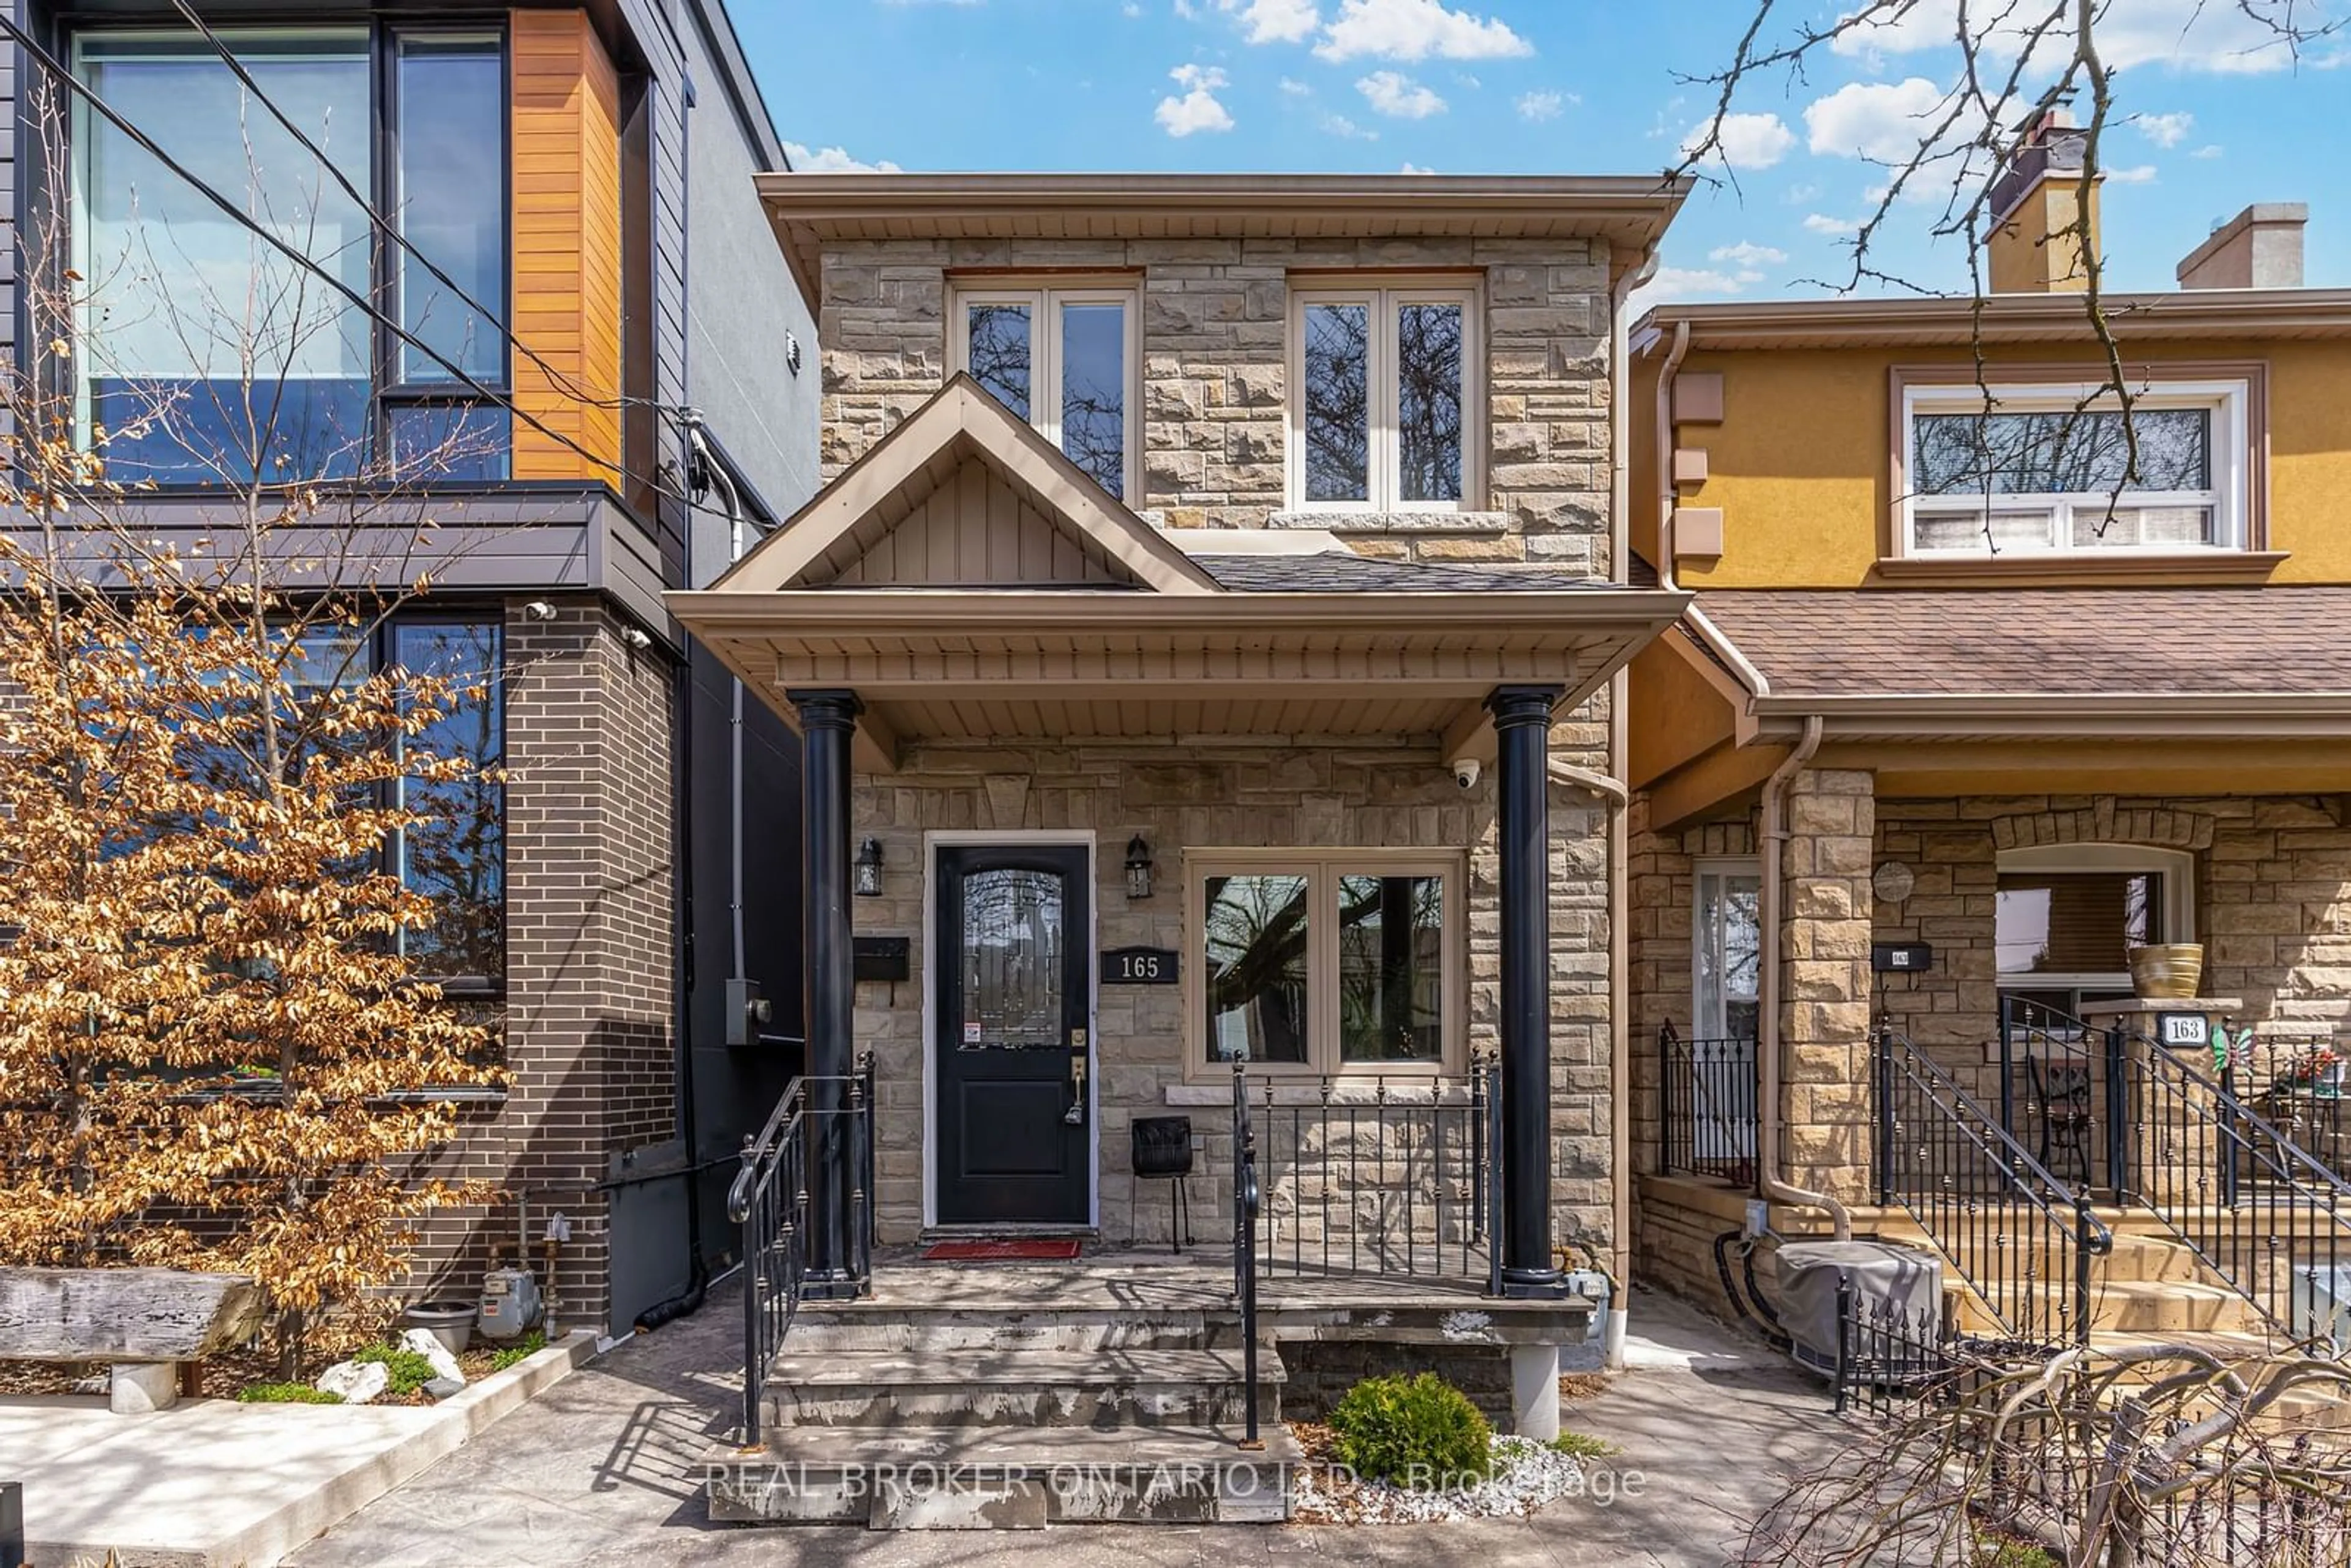 Home with brick exterior material for 165 Caledonia Rd, Toronto Ontario M6E 4S8